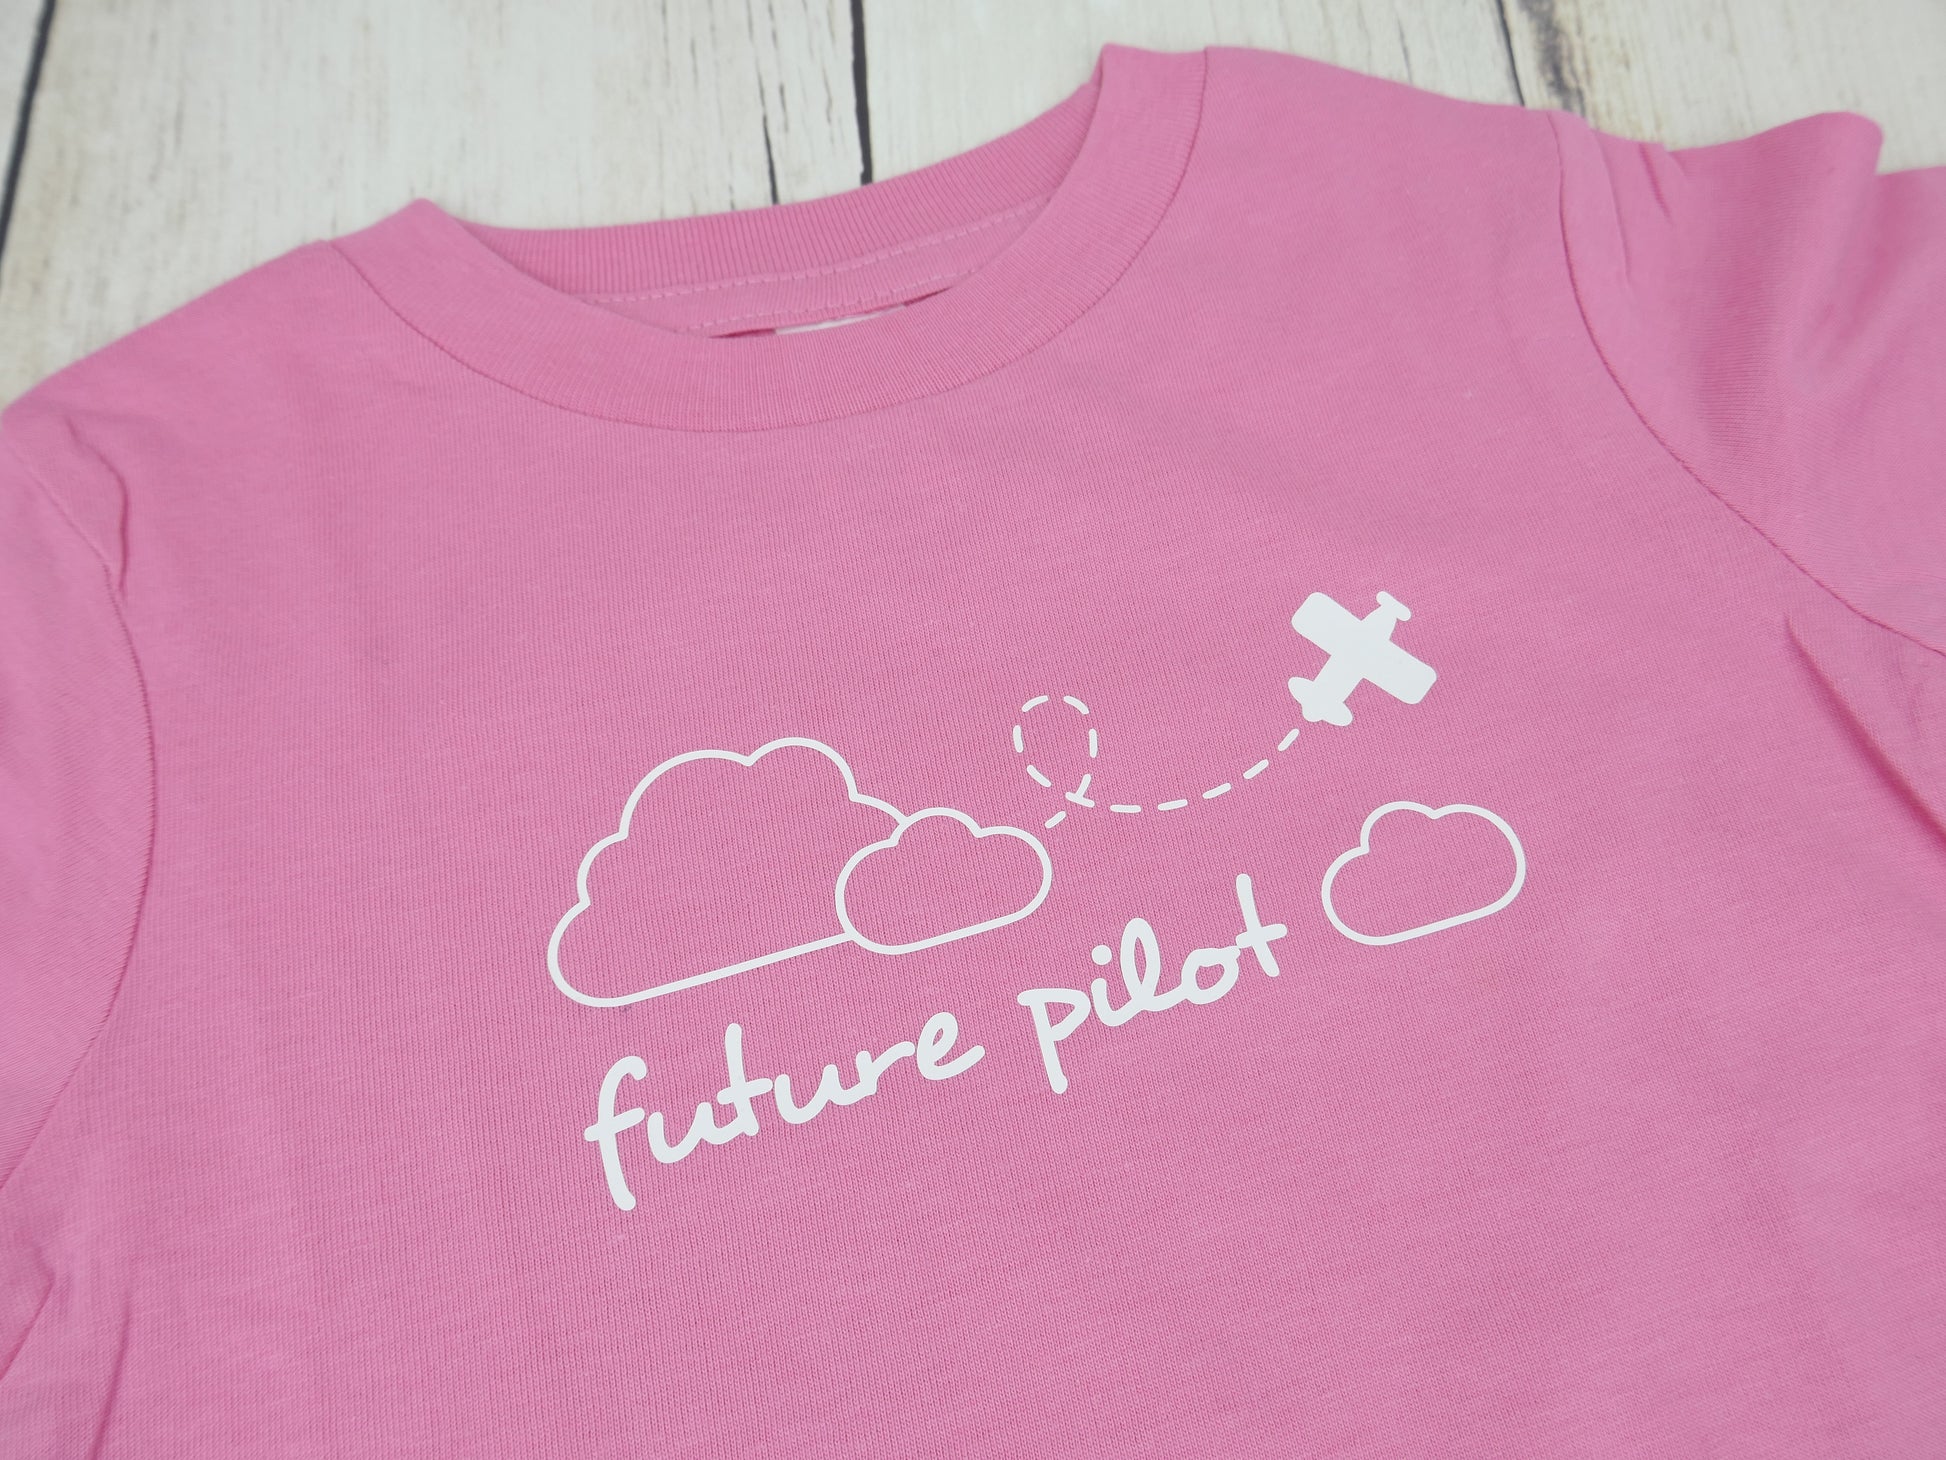 Airplane / Future Pilot Organic Tee - Pink / White - CAVU Creations